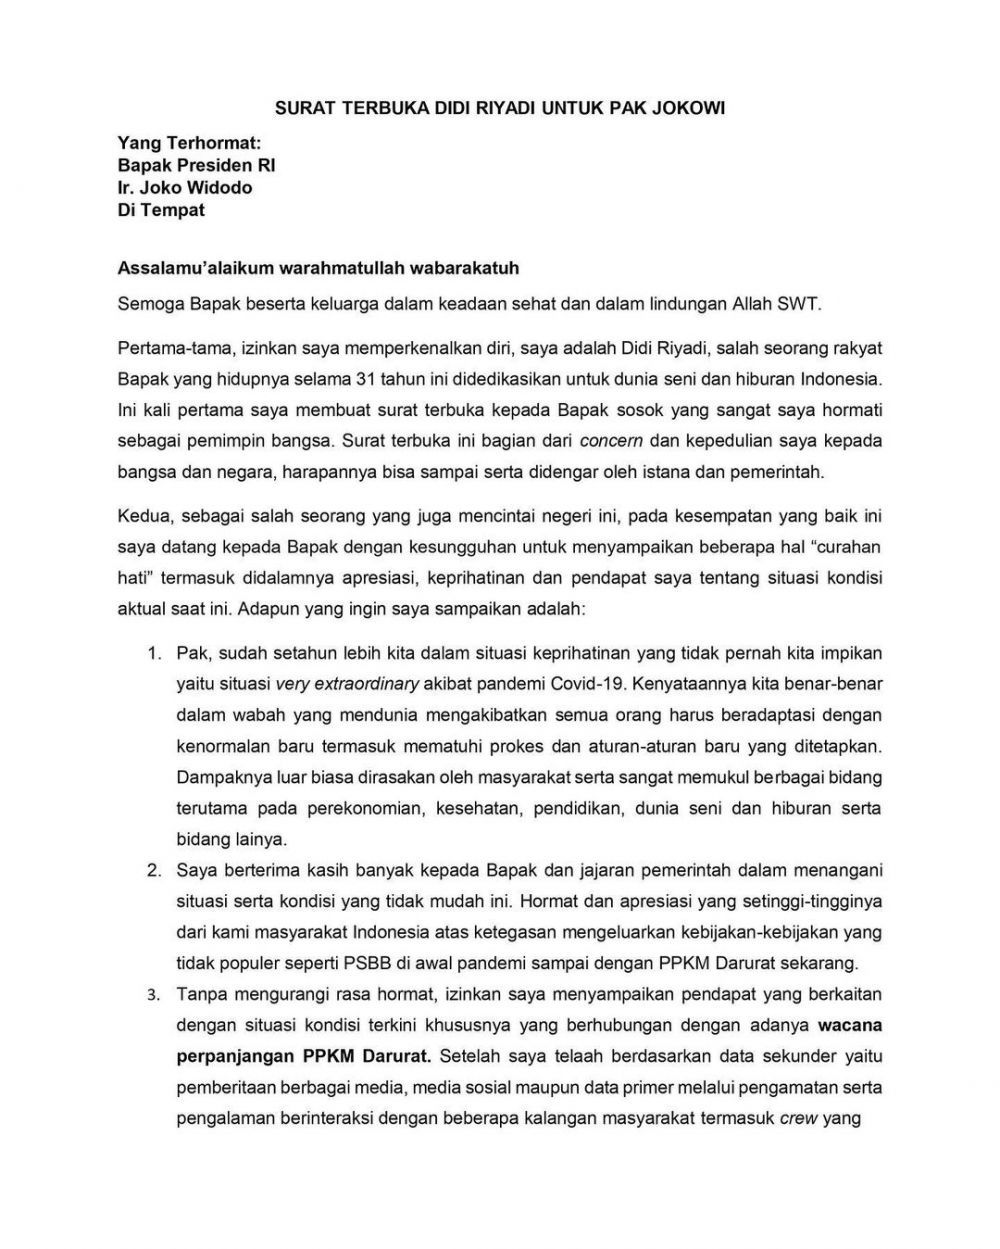 Surat terbuka Didi Riyadi untuk Jokowi soal PPKM Darurat, ini isinya